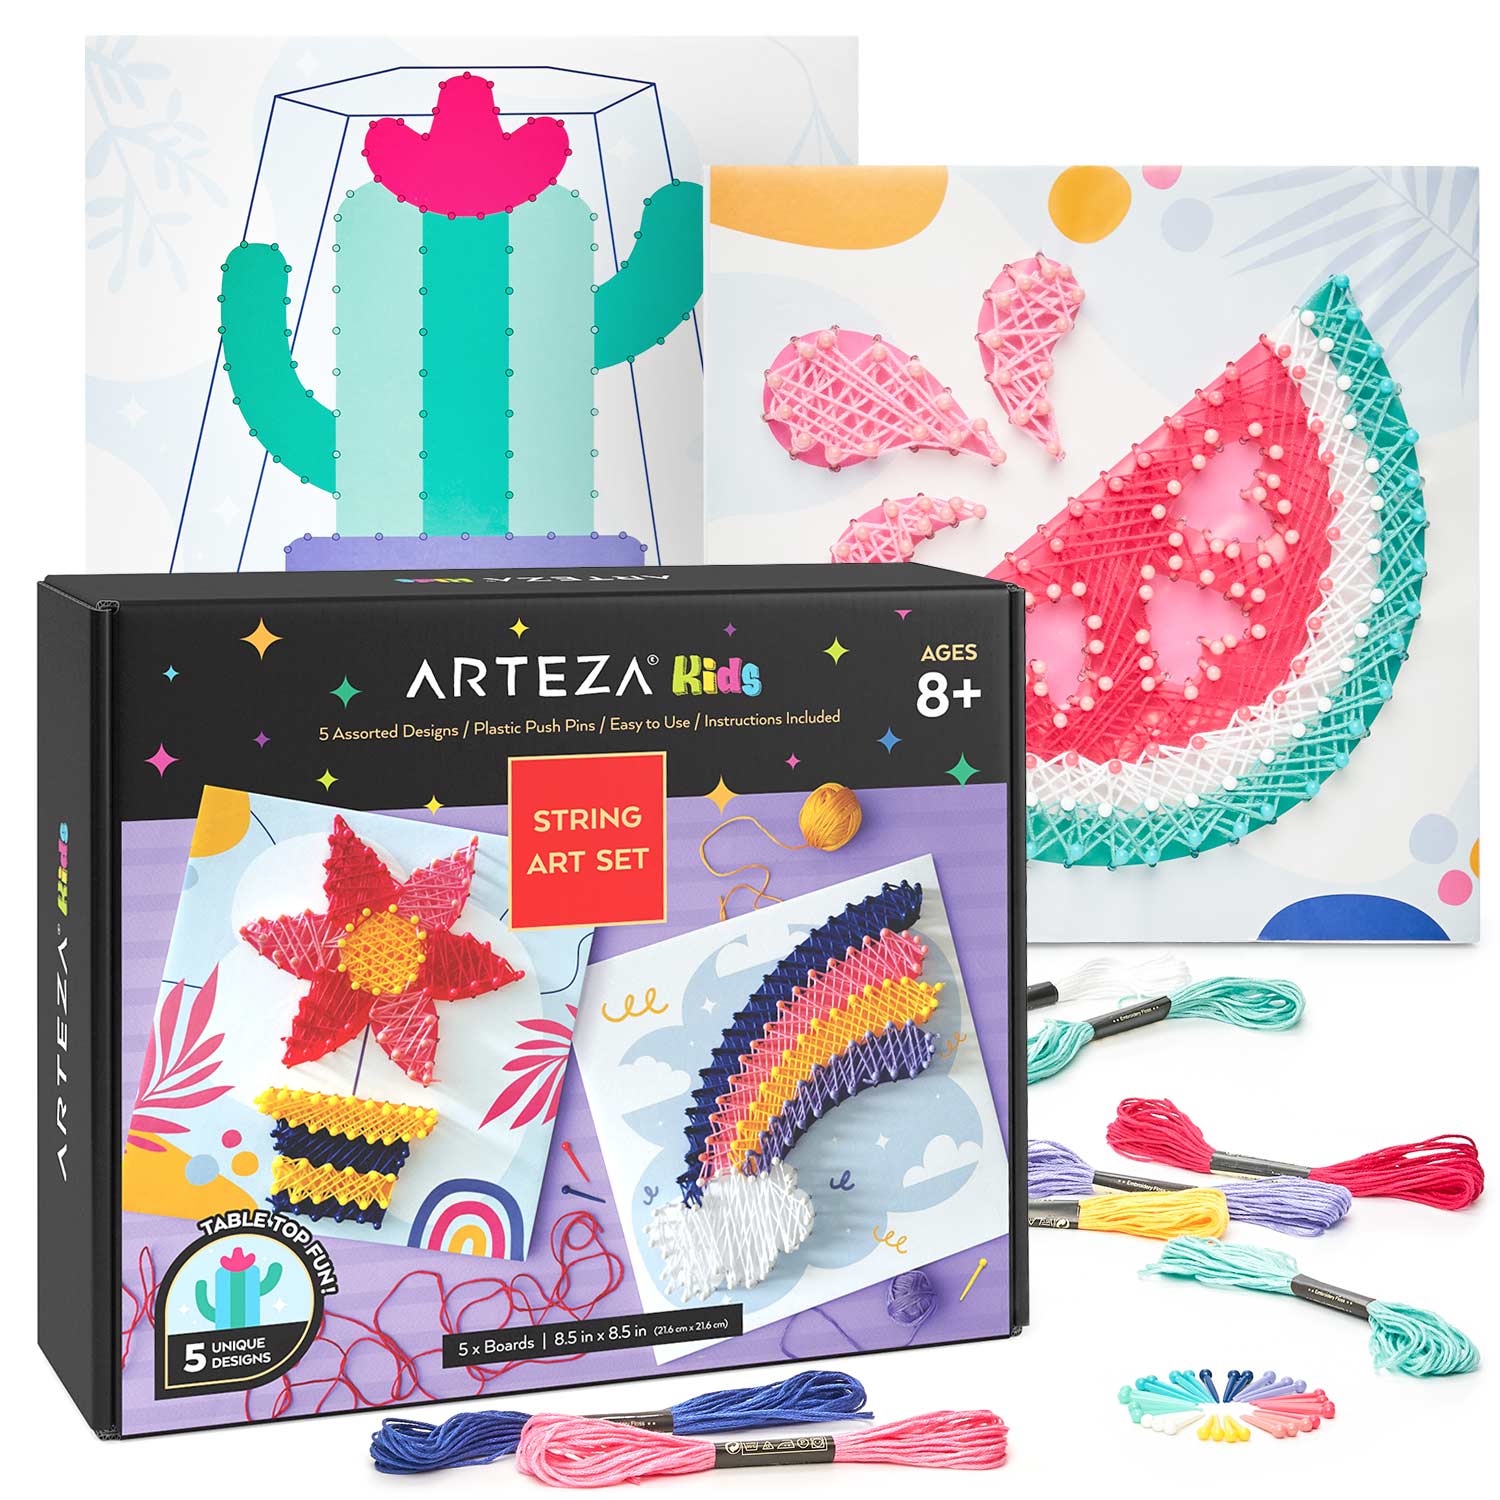 Arteza's Best Art Supplies –